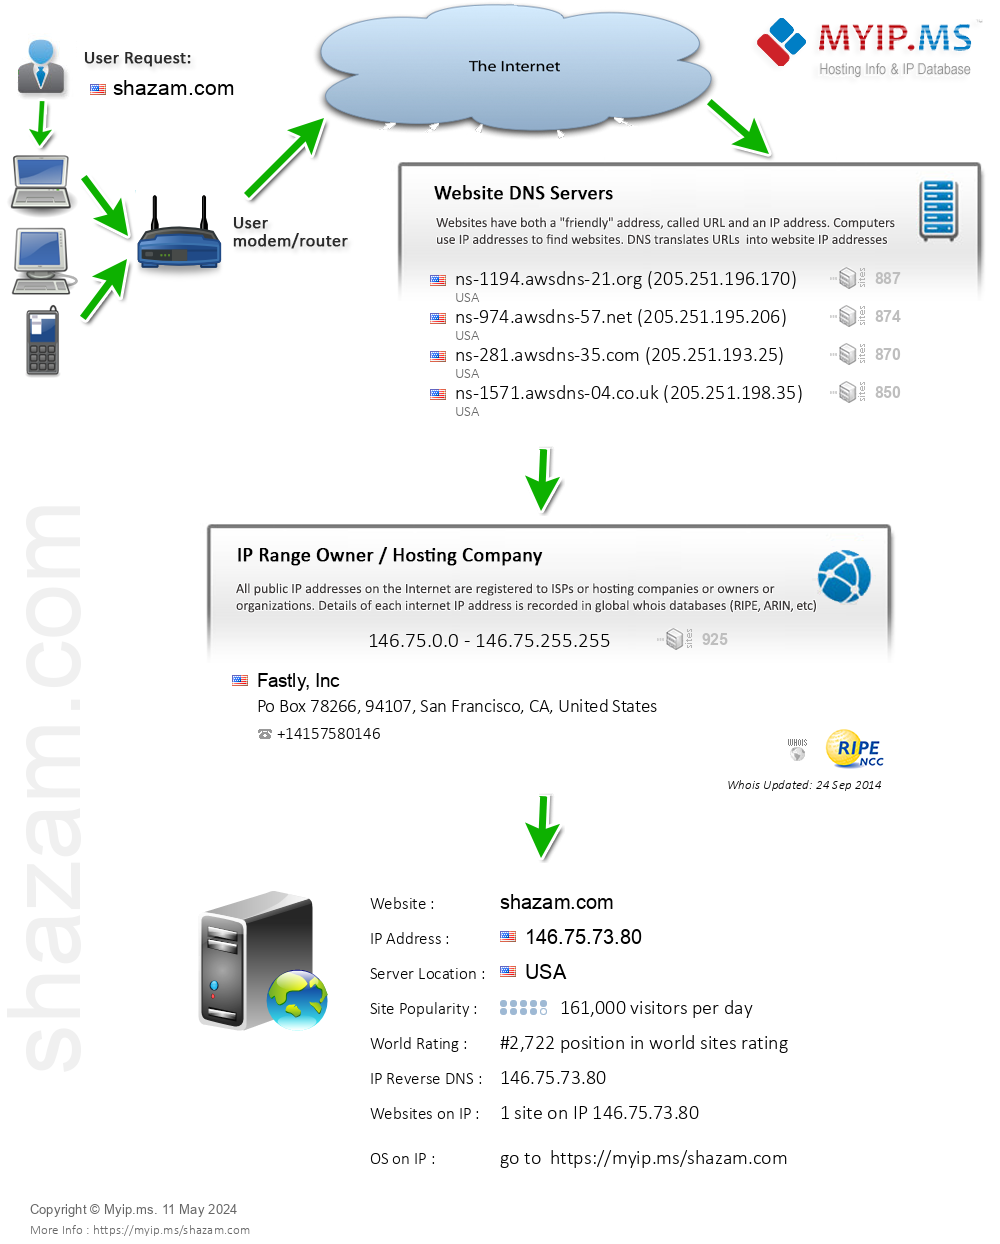 Shazam.com - Website Hosting Visual IP Diagram